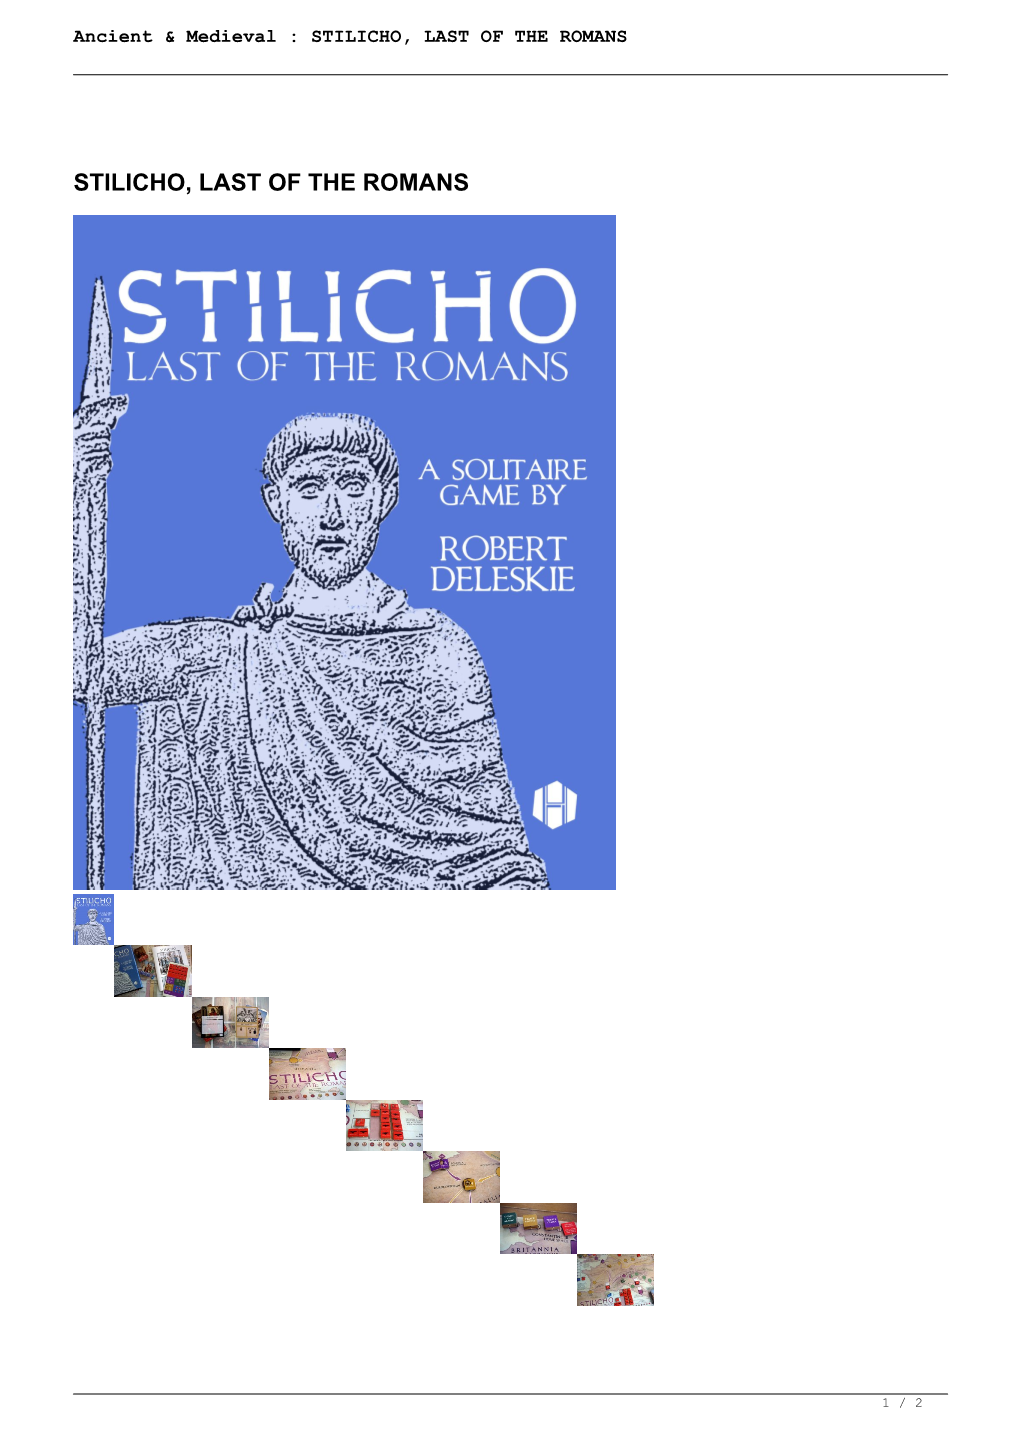 Stilicho, Last of the Romans